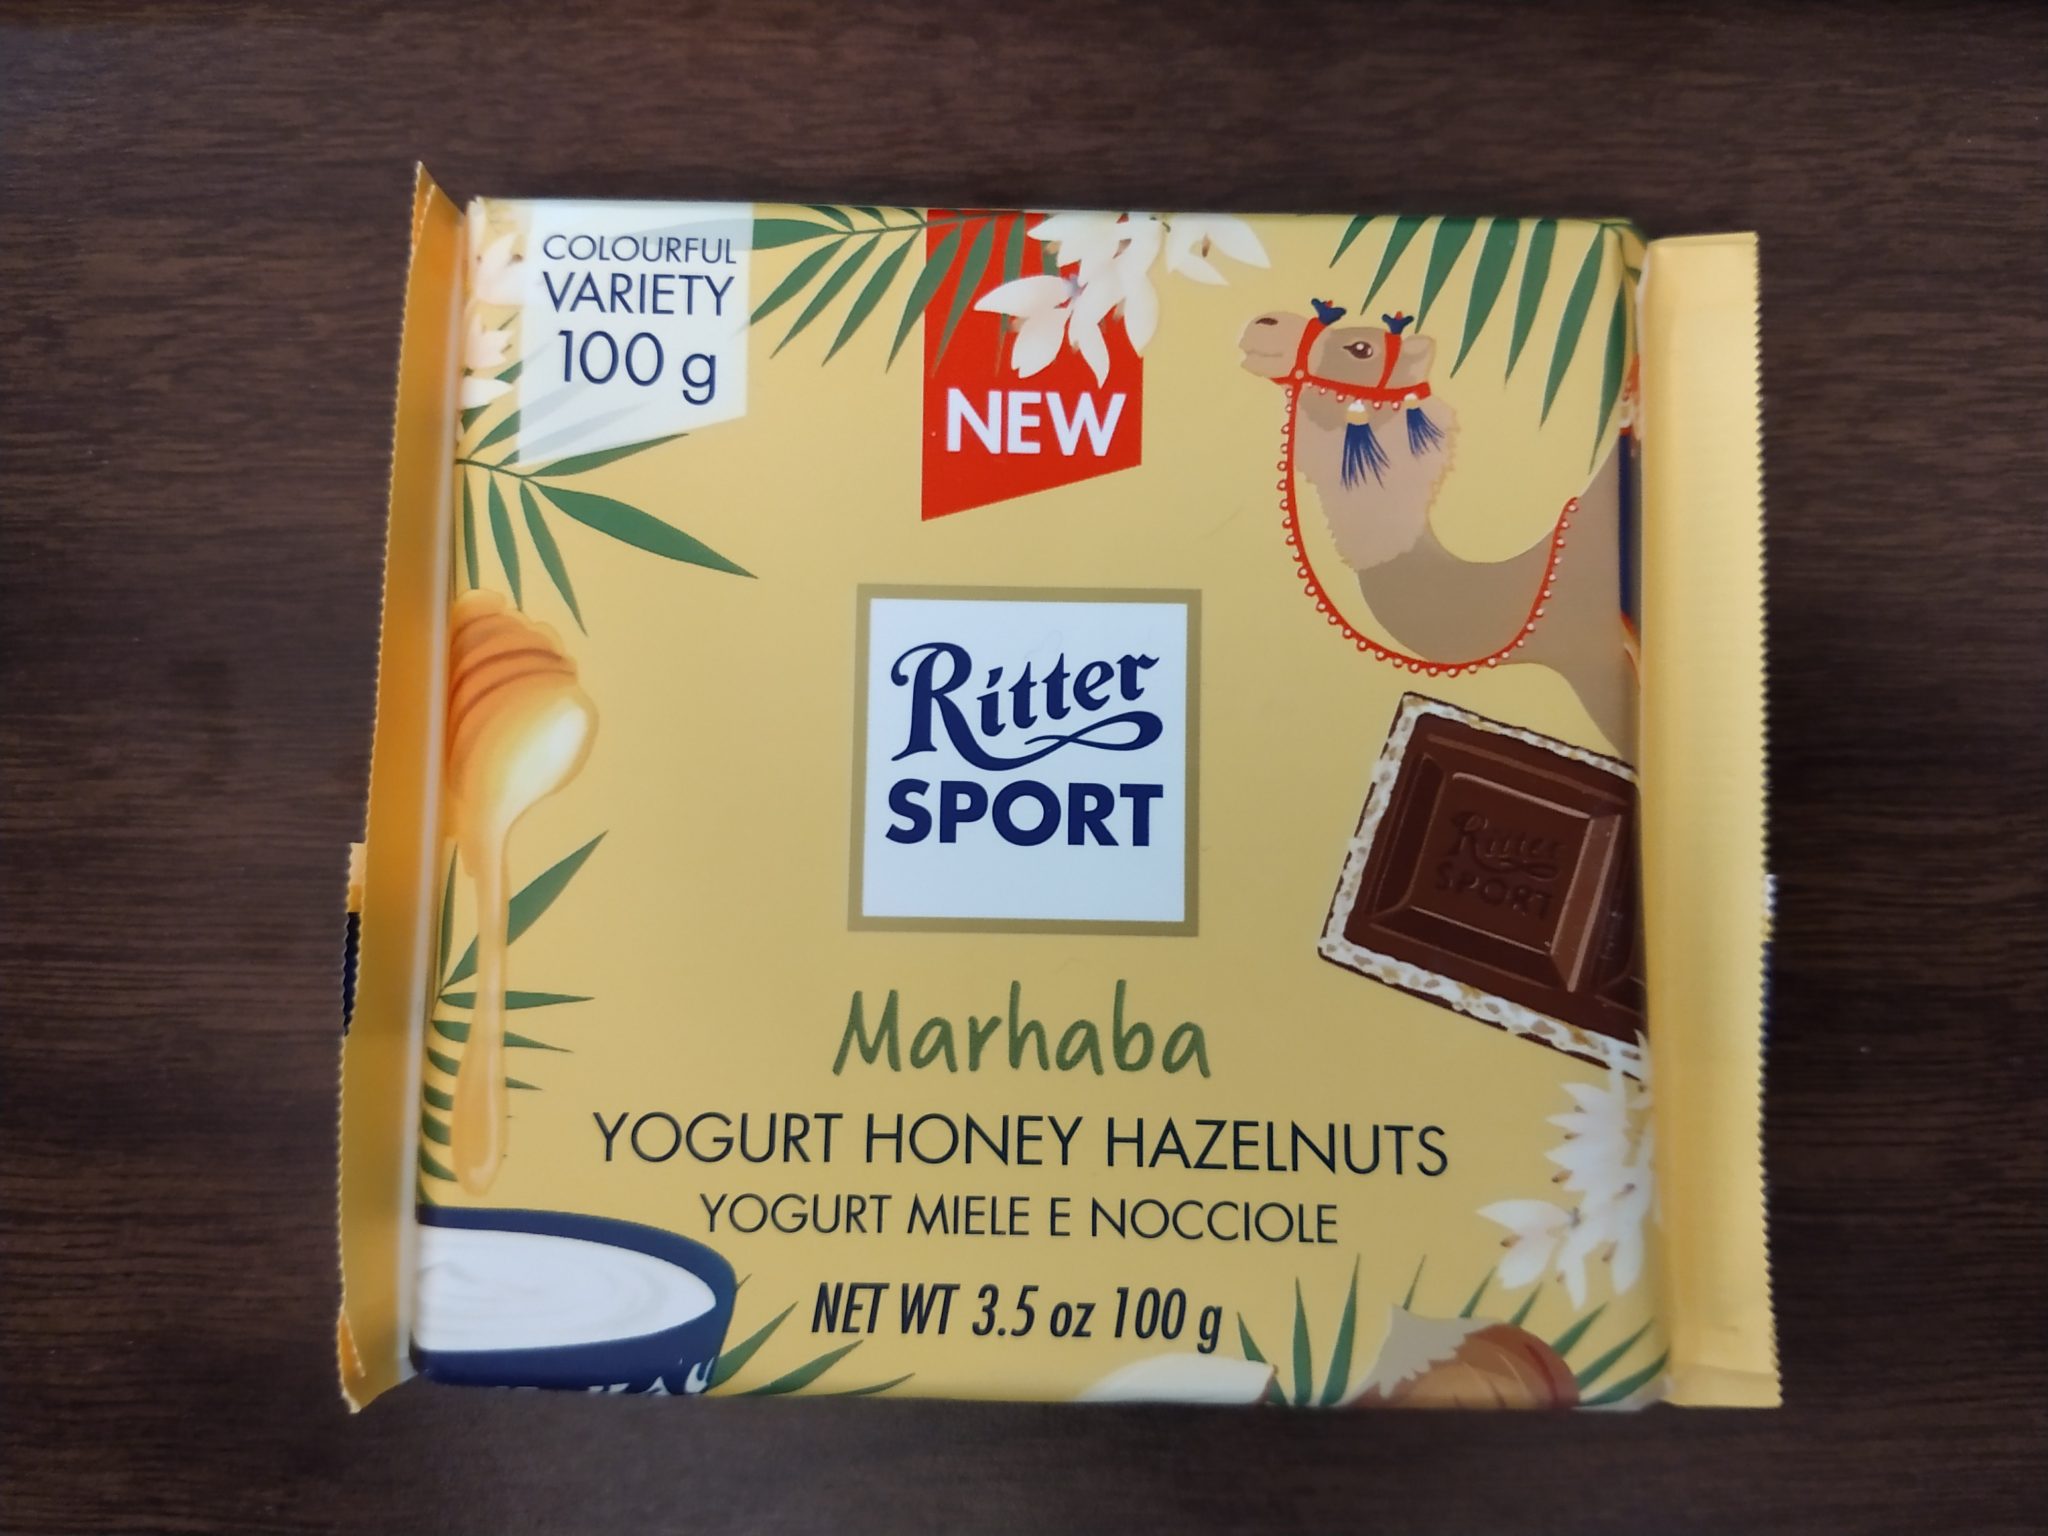 Ritter Sport – Marhaba Yogurt Honey Hazelnut